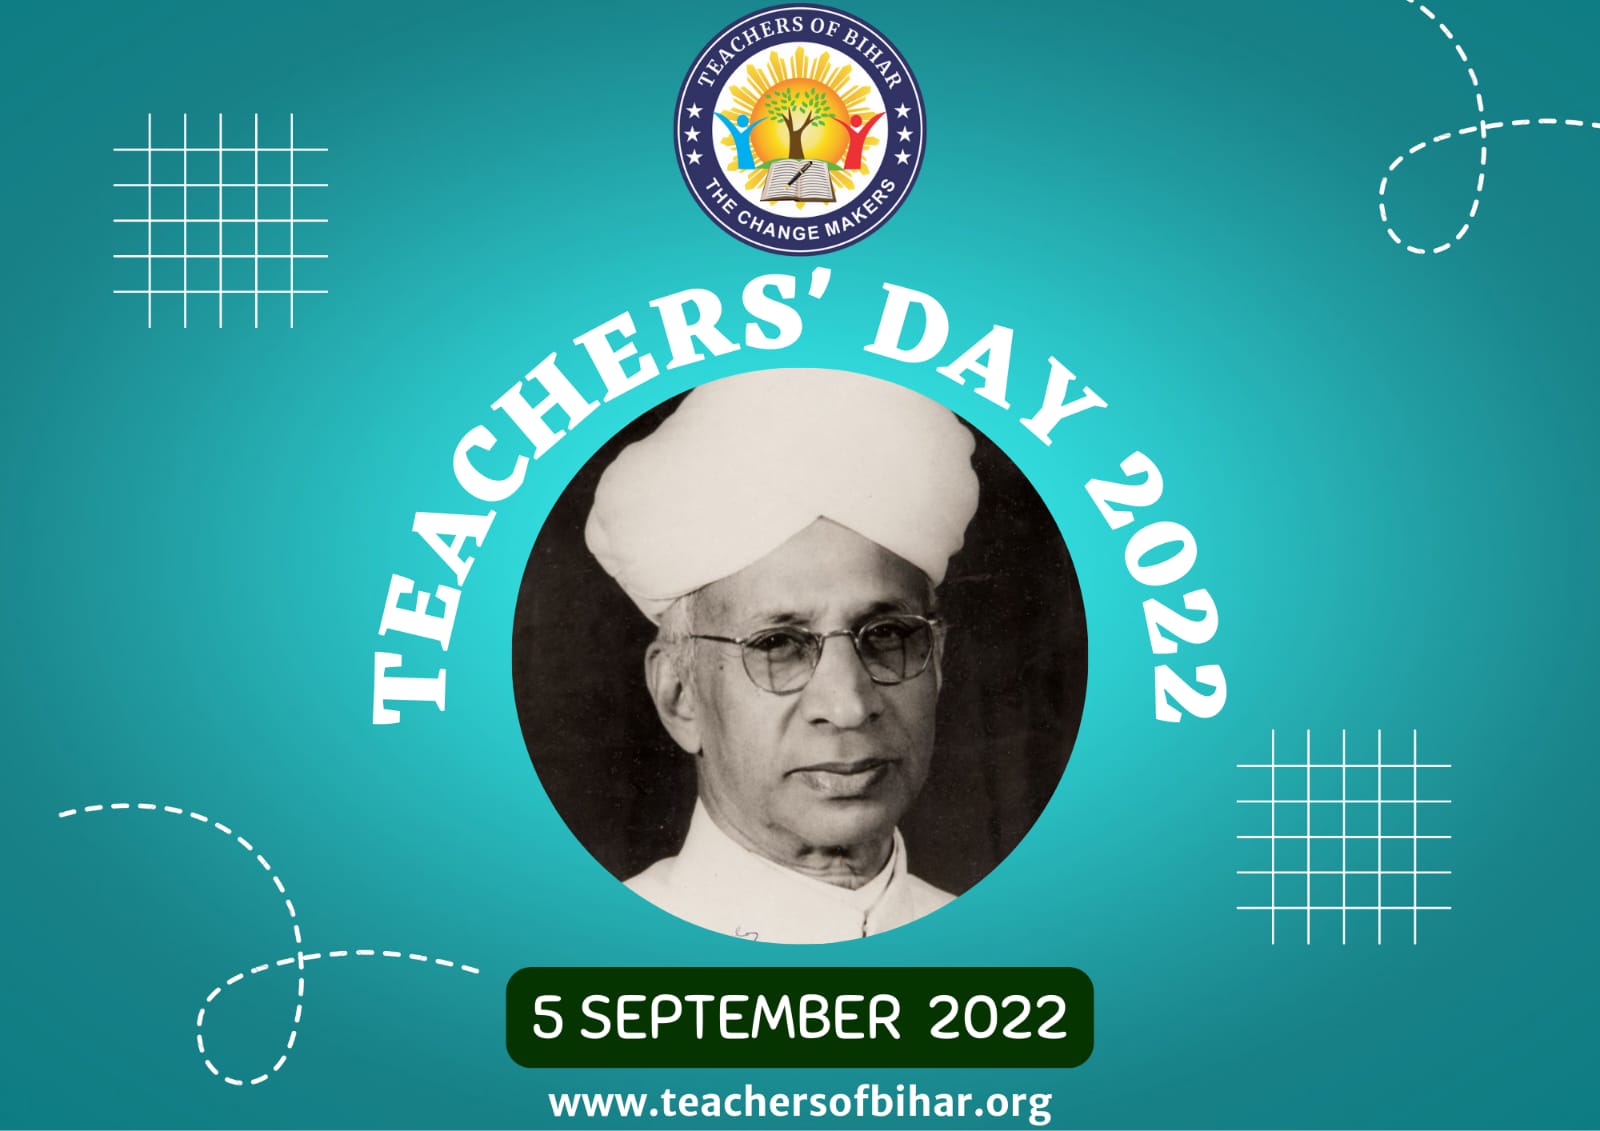 Click to view राज्य शिक्षा शोध एवं प्रशिक्षण परिषद बिहार तथा टीचर्स आफ बिहार के संयुक्त तत्वाधान में आयोजित होगा शिक्षक दिवस 2022